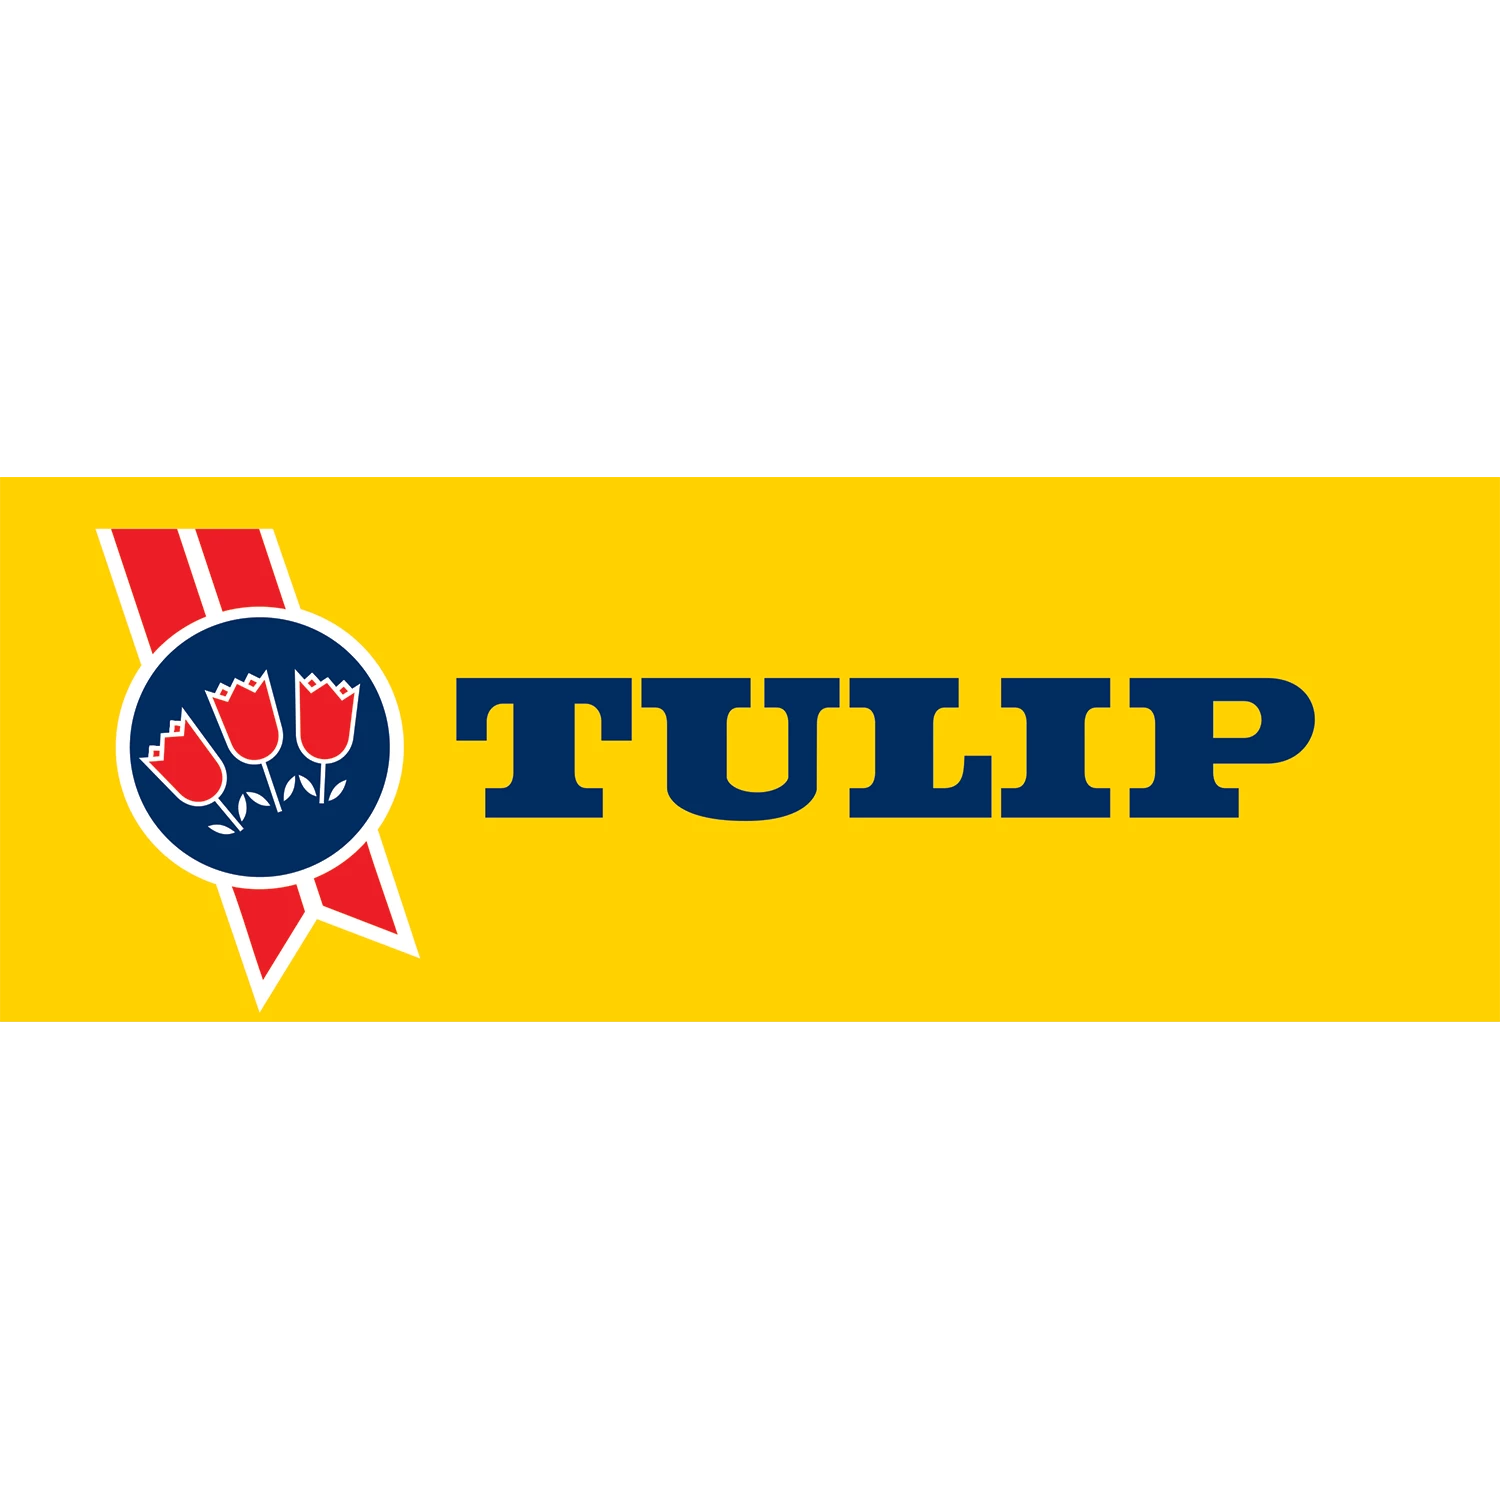 Tulip logo